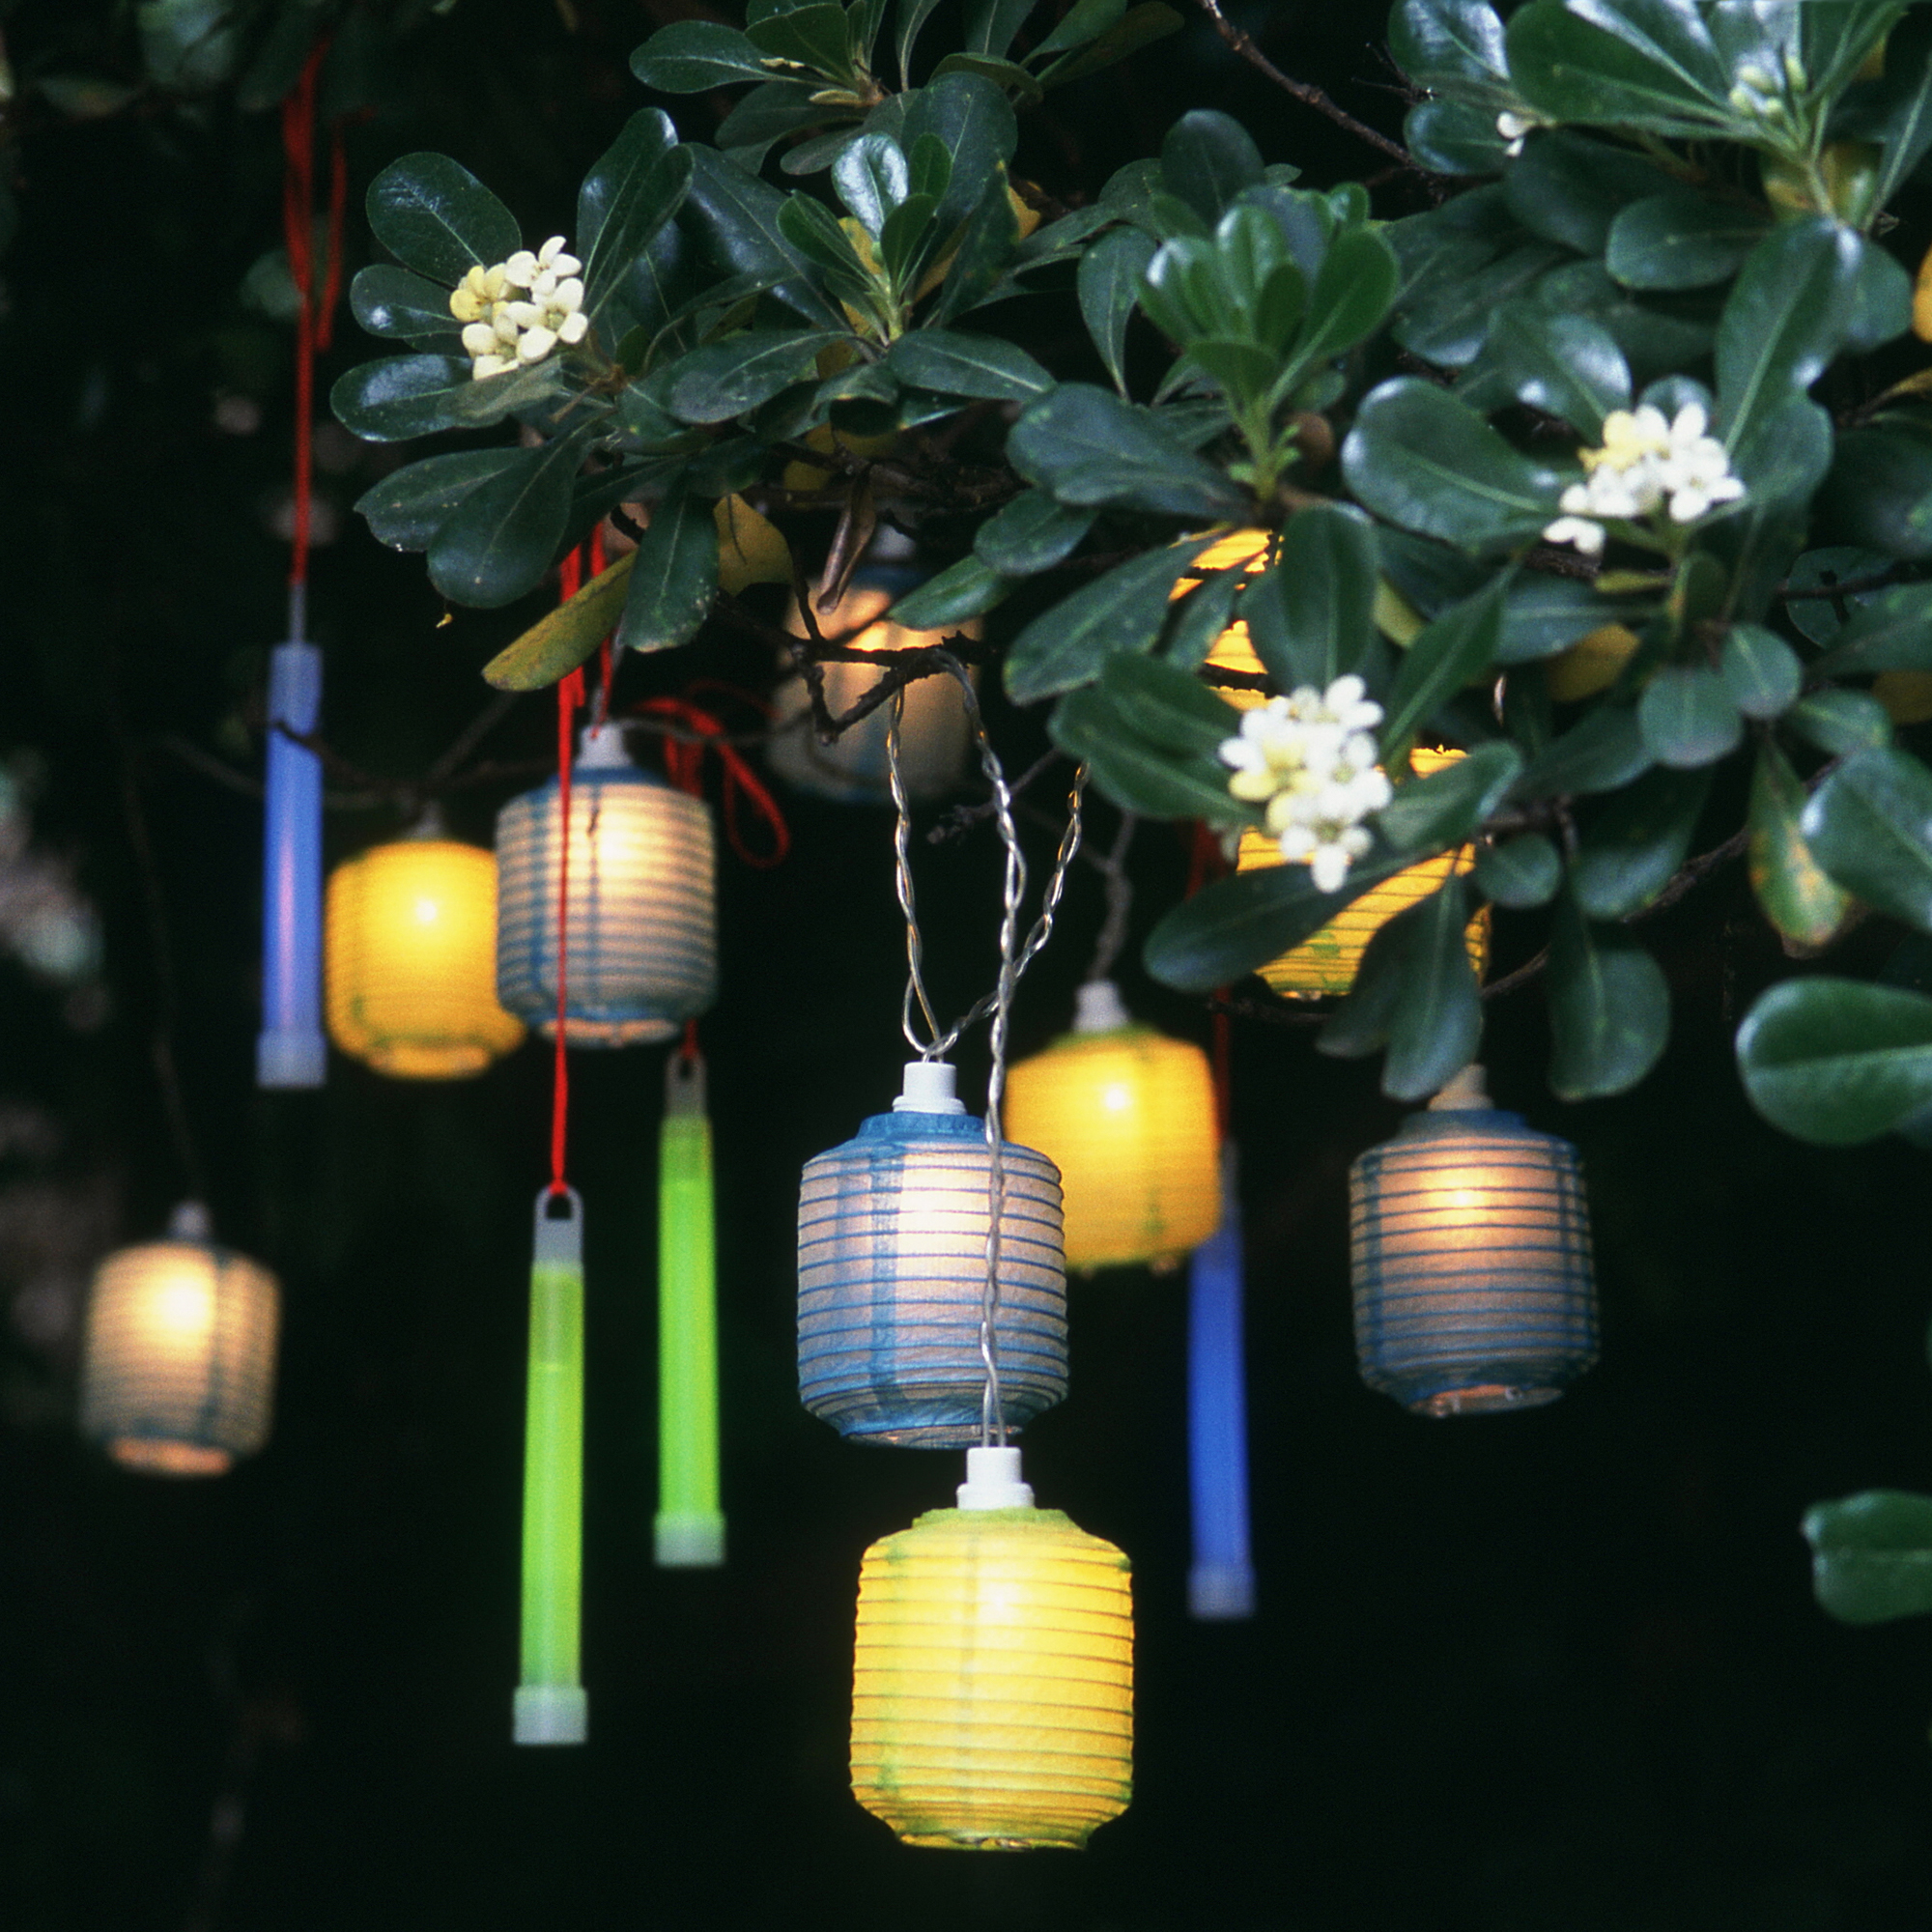 Outdoor tree light ideas – 10 ways to illuminate your garden